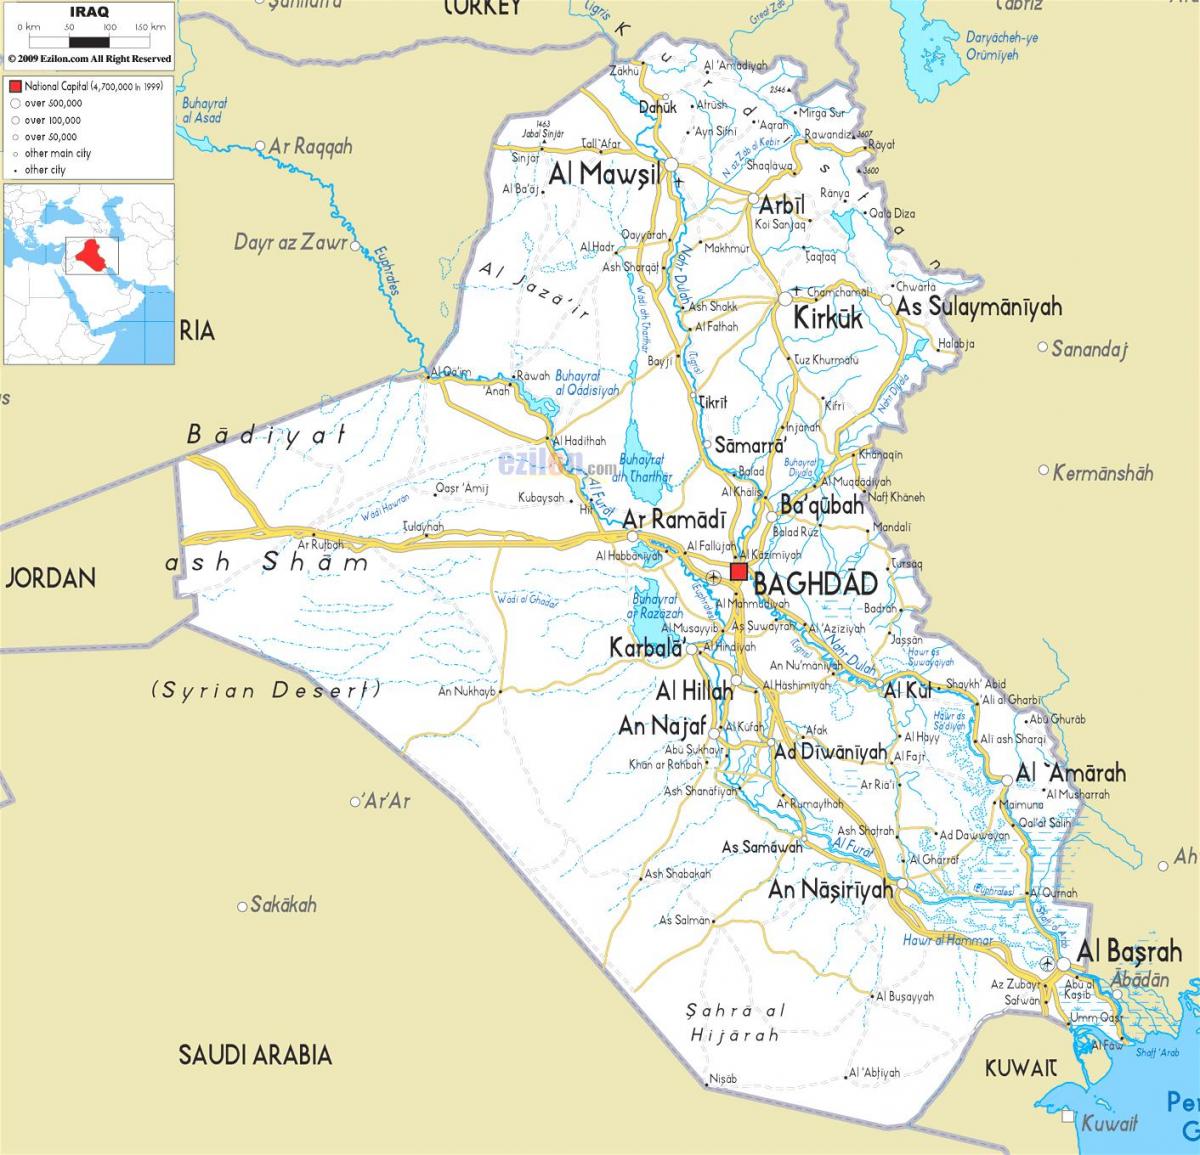 מפה של עיראק הנהר.